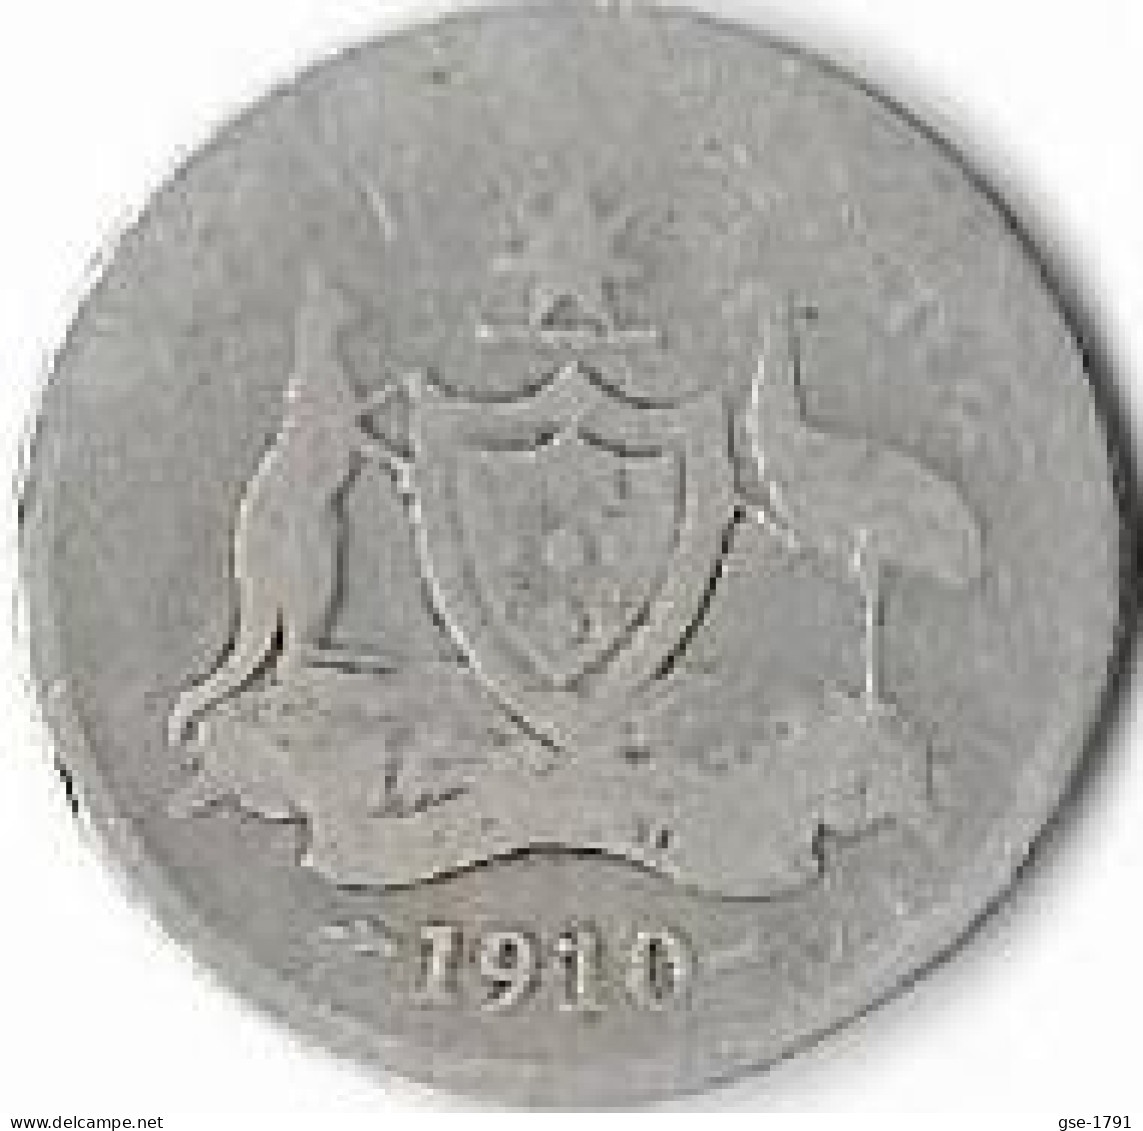 AUSTRALIE  EDOUARD VII ,1 Shilling 1910 (L)  Argent , - Zonder Classificatie